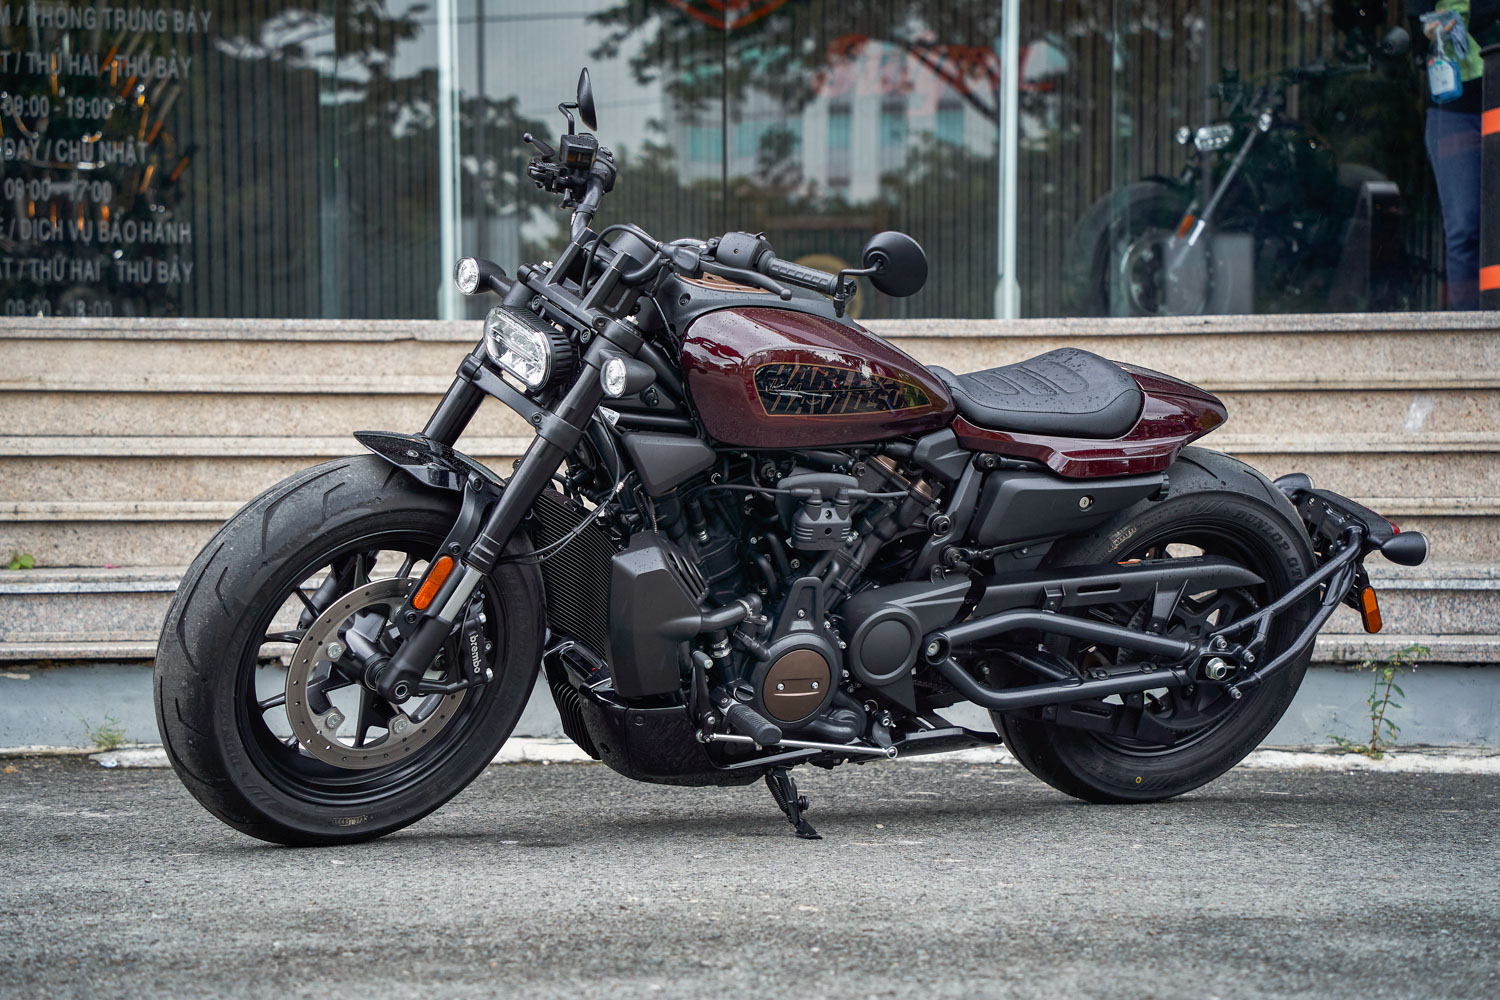 xe-moto-Harley-Davidson-Sportster-S-anh_9.JPG